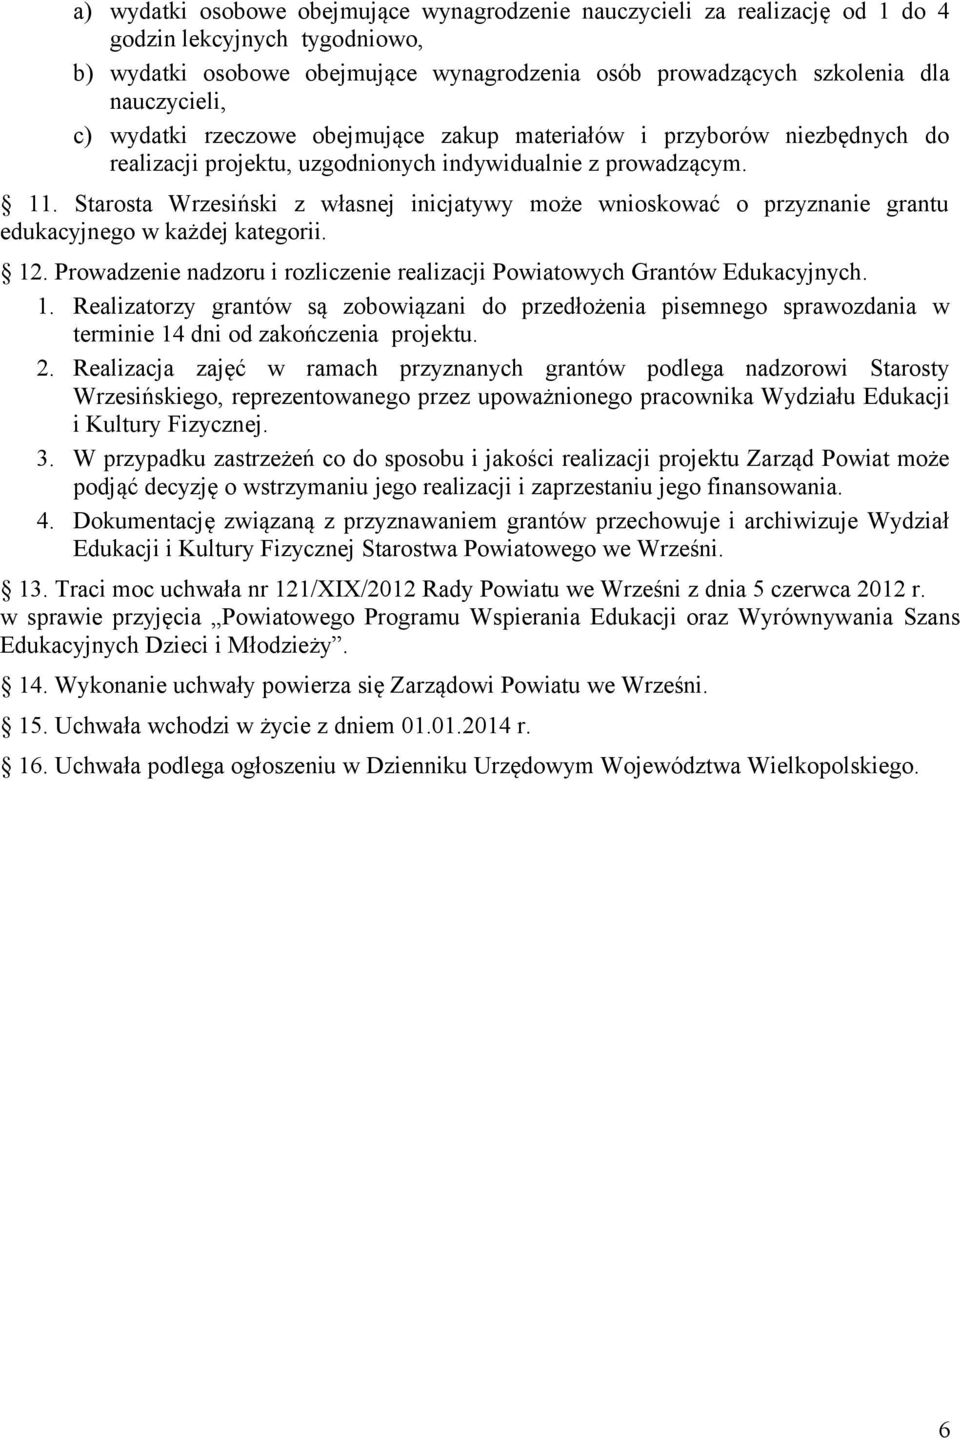 Starosta Wrzesiński z własnej inicjatywy może wnioskować o przyznanie grantu edukacyjnego w każdej kategorii. 12